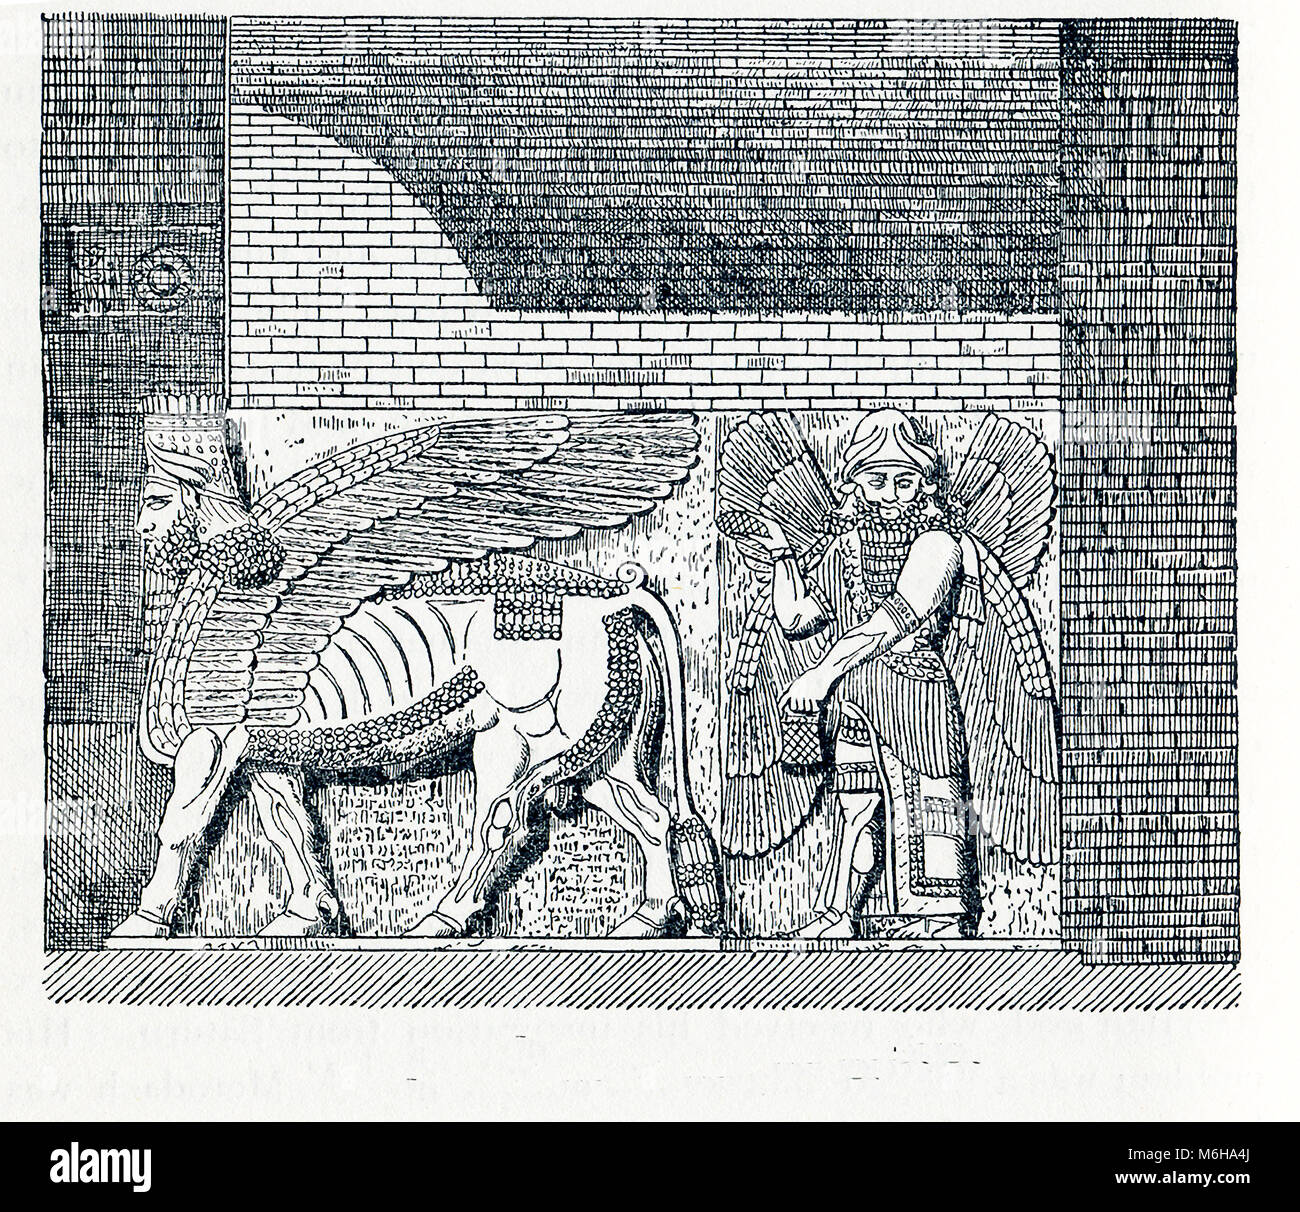 Cette illustration date d'environ 1898 et montre une scène de la mythologie assyrienne. Sur la droite se trouve une figure ailée. À gauche est un taureau ailé à tête humaine. Chacune est un génie, qui les Assyriens décrits comme des taureaux avec des têtes humaines, des hommes avec des têtes d'oiseaux, et les hommes ailés. Bien qu'elles ne sont pas toutes-puissantes divinités, ils sont doués de super-pouvoirs humains. Ils avaient le pouvoir d'éloigner les mauvais esprits. Ici, le symbolisme comprend le pouvoir de ces divinités pour protéger les murs et portes de la ville. Le cône dans la main droite de la figure à droite aurait été remplie d'eau bénite et serait u Banque D'Images